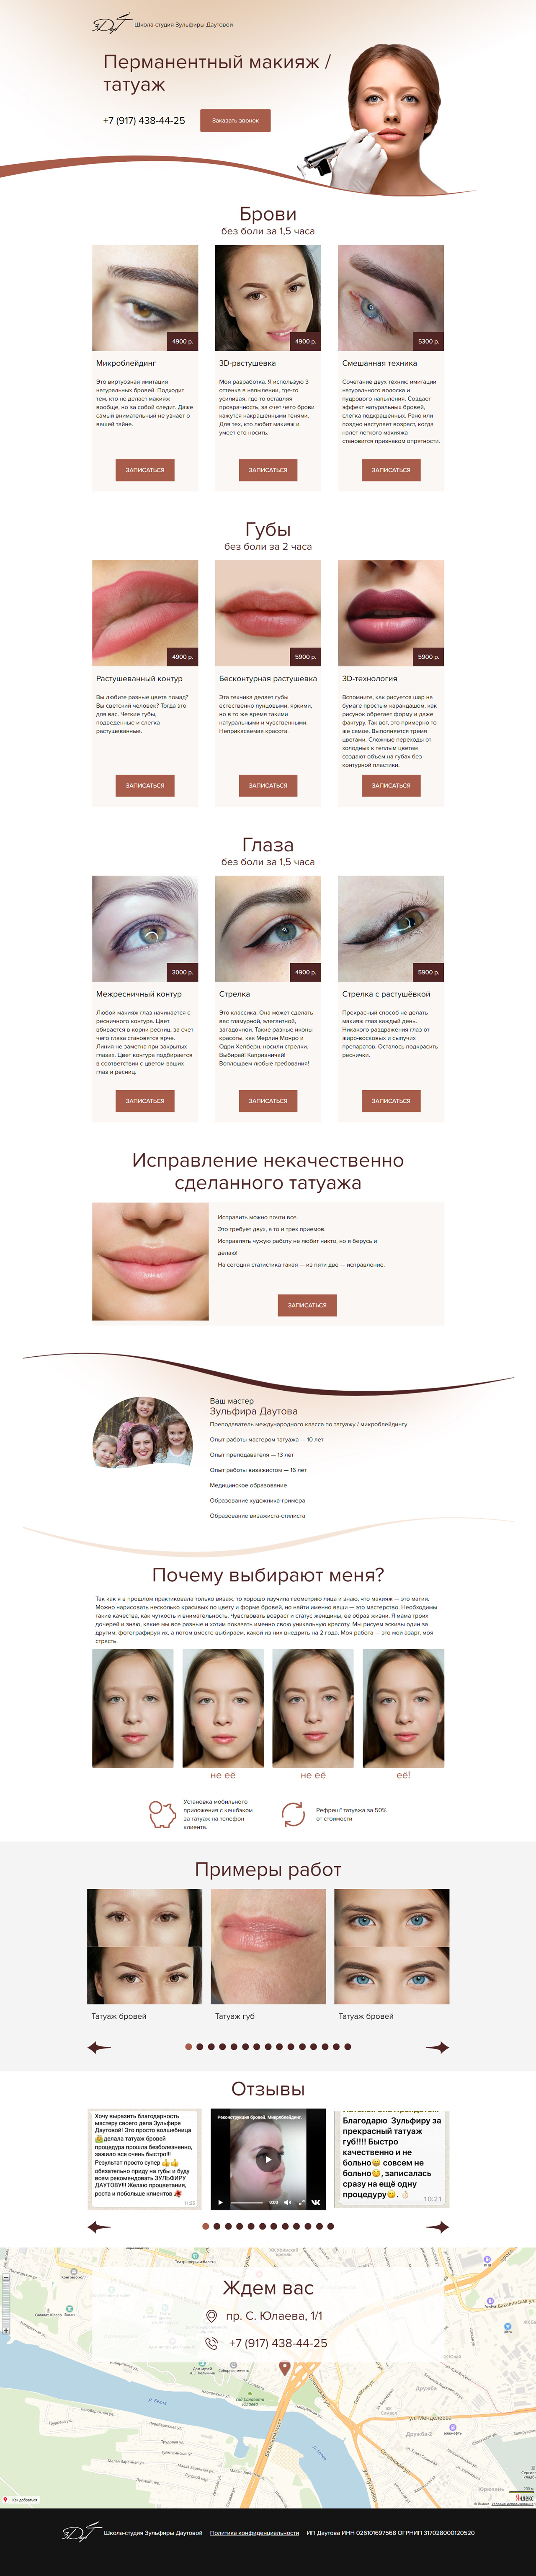 Создание корпоративного сайта Зульфира Даутова